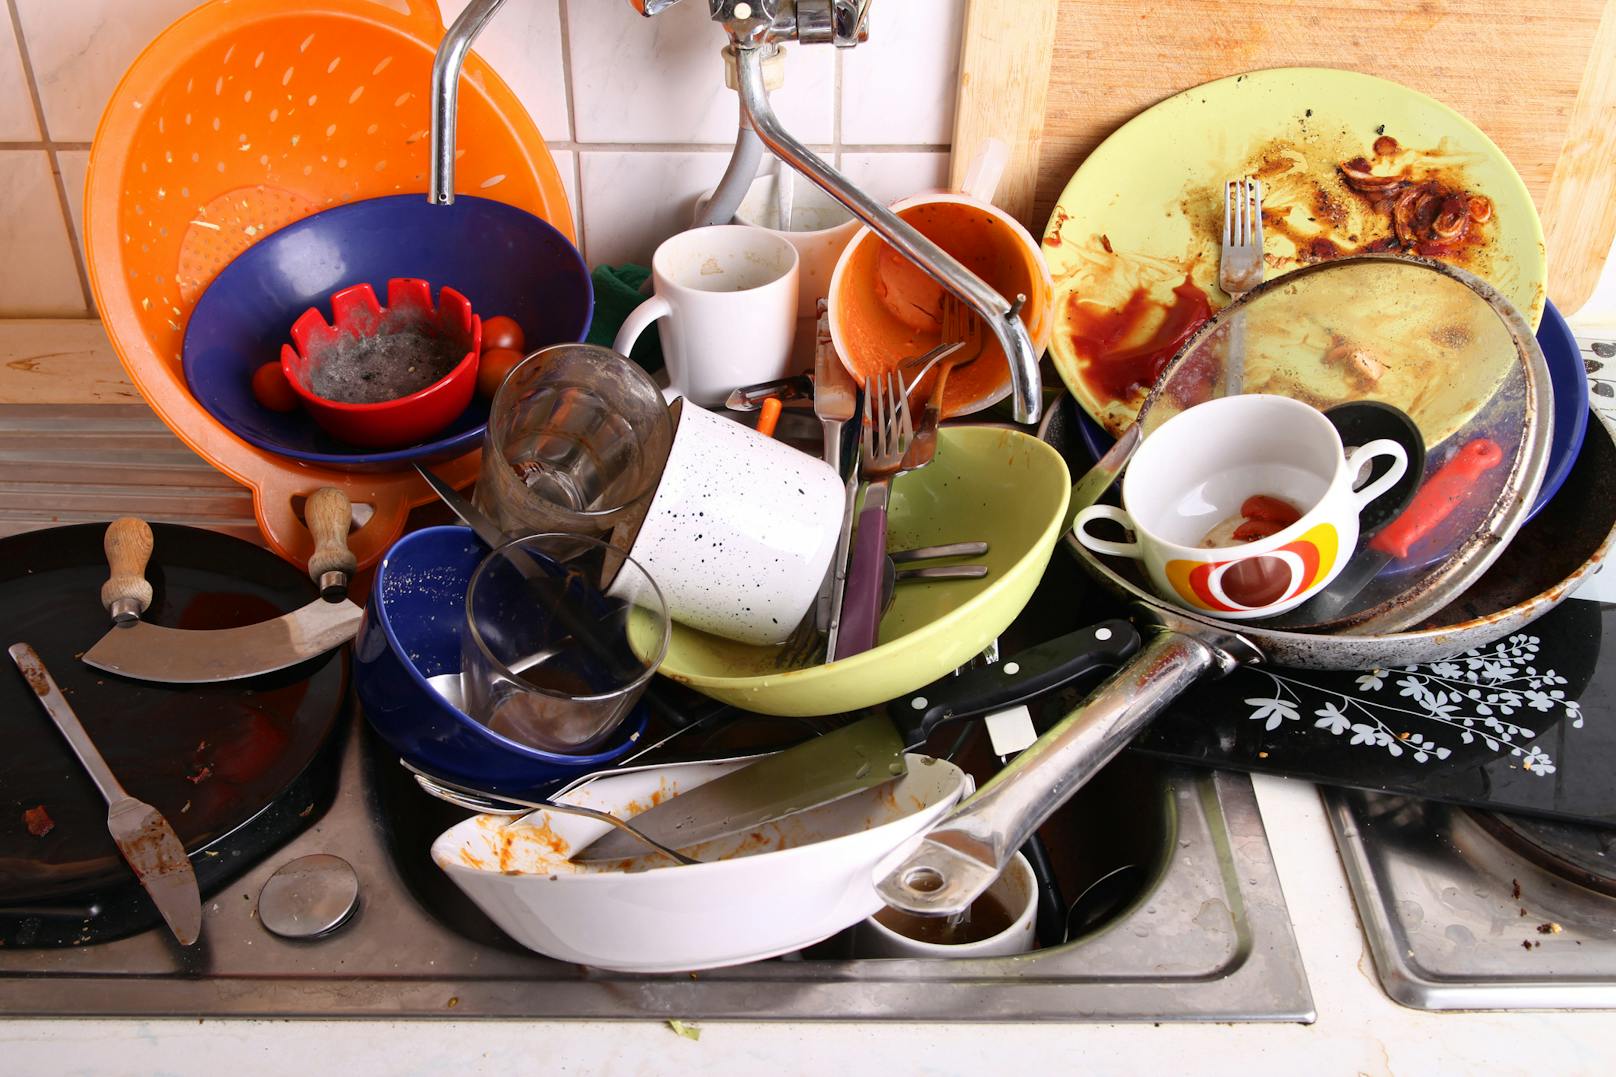 Wir haben Menschen, die Abwaschen hassen wie die Pest, gefragt, wie sie diese Hausarbeit effizienter hinter sich bringen – oder zumindest ein bisschen weniger schlimm finden.